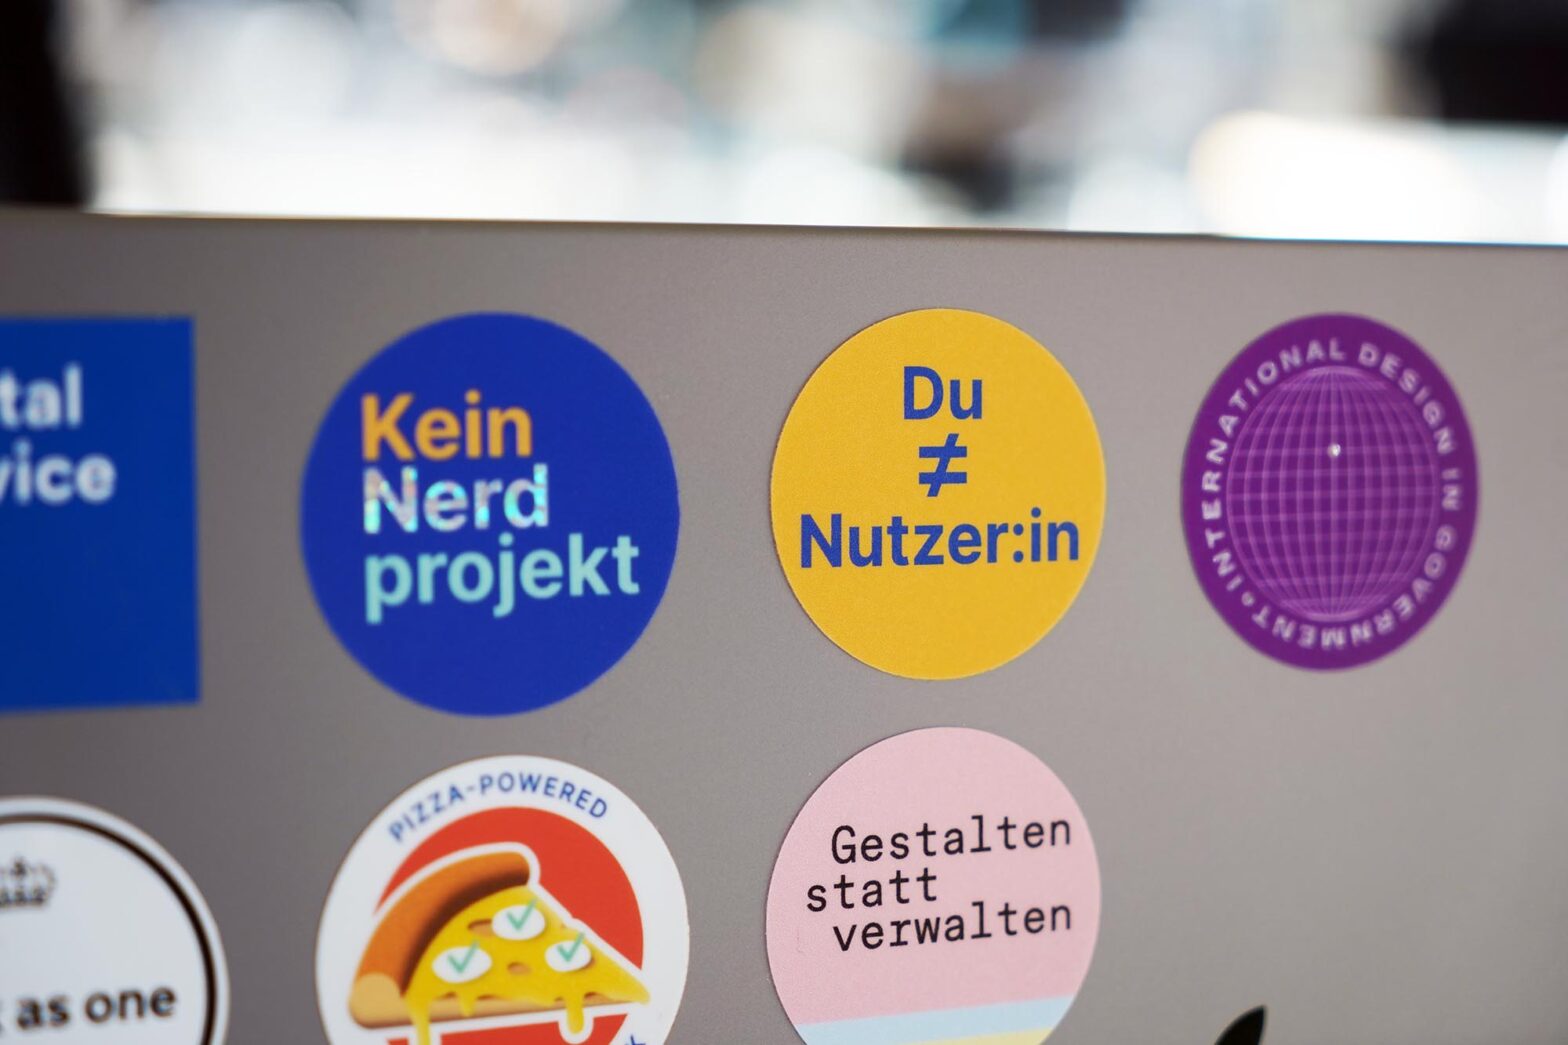 Mehrere bunte Sticker auf einem silbernen Laptop-Computer; ein gelber Sticker im Fokus sagt ›Du ungleich Nutzer:in‹